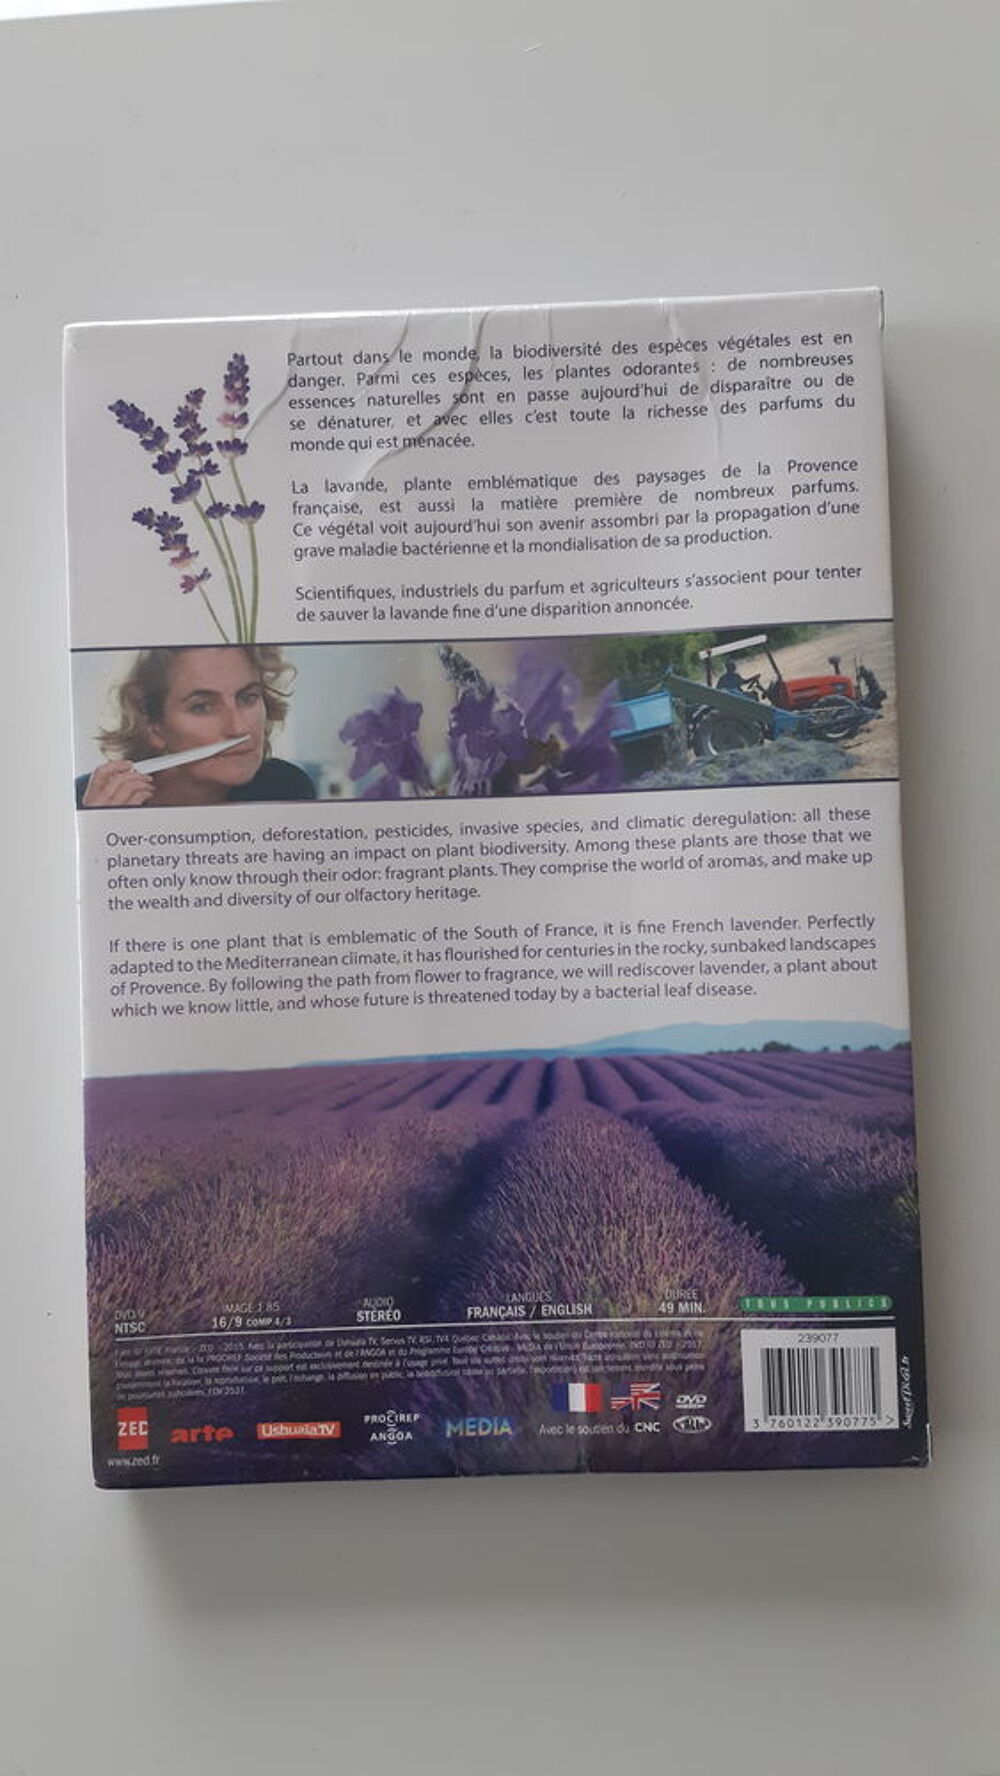 Tous les parfums du monde: la lavande fine de Provence DVD et blu-ray